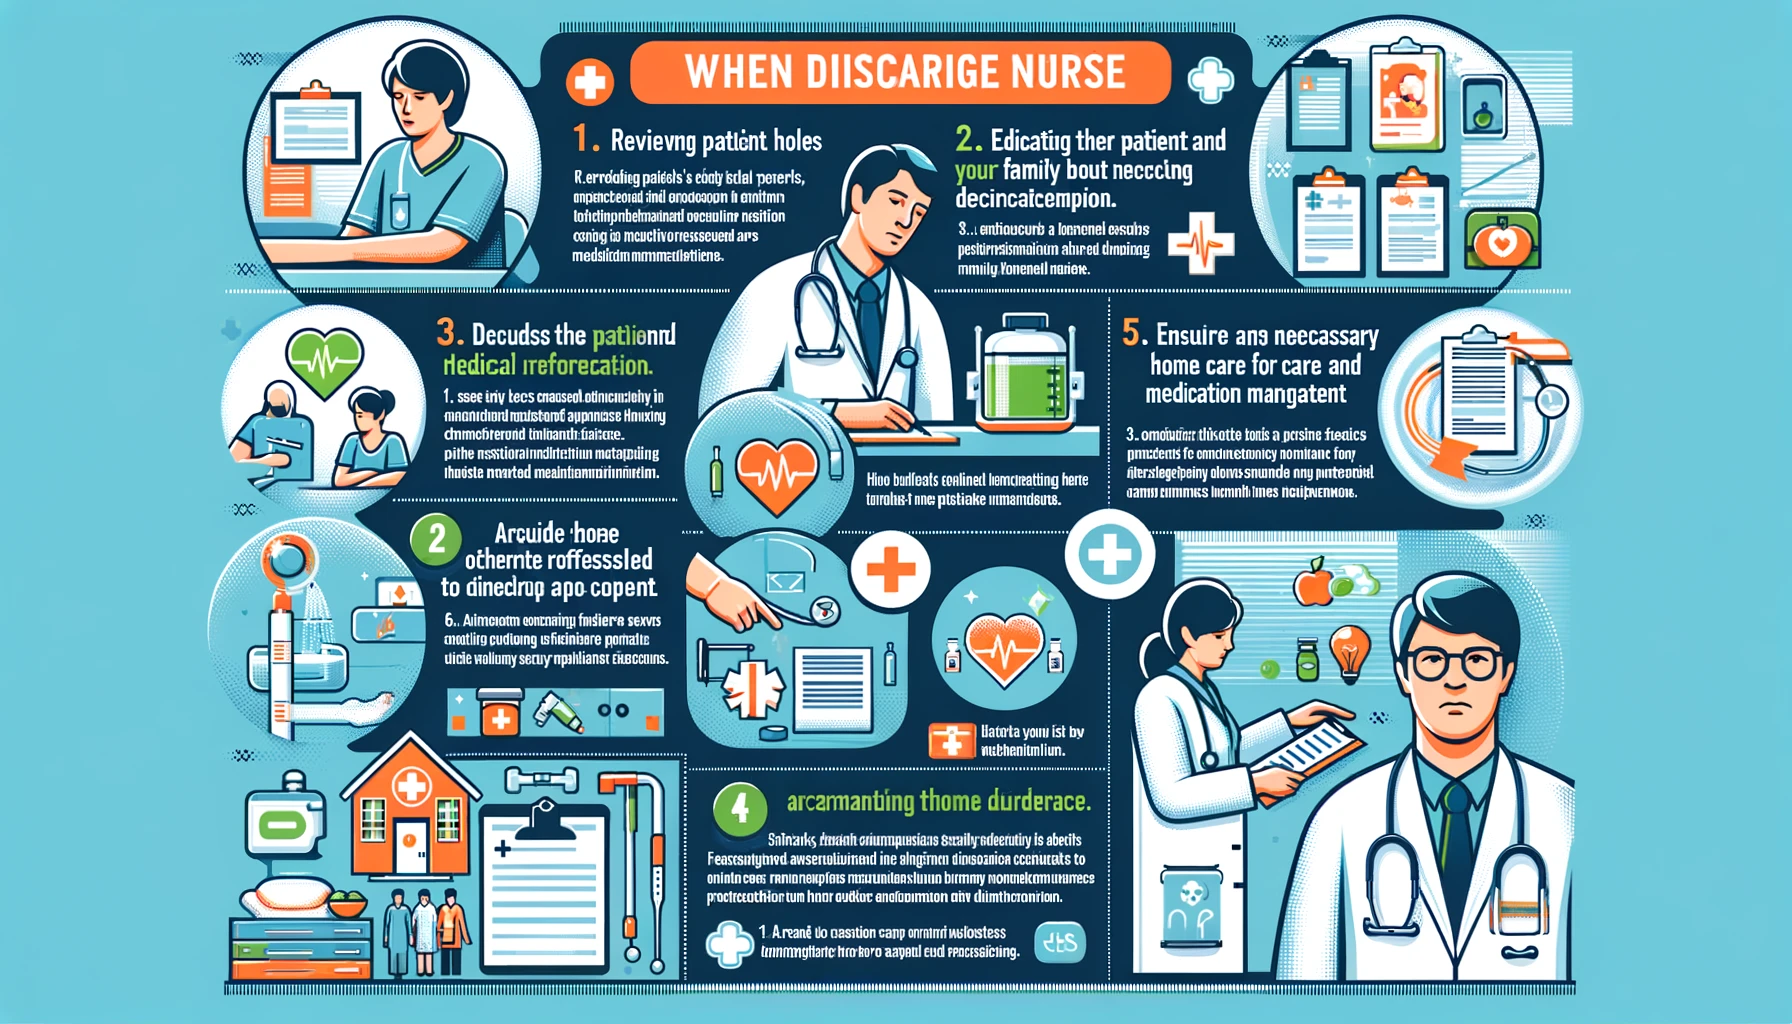 Duties And Roles of Discharge Nurse For Discharging The Patient